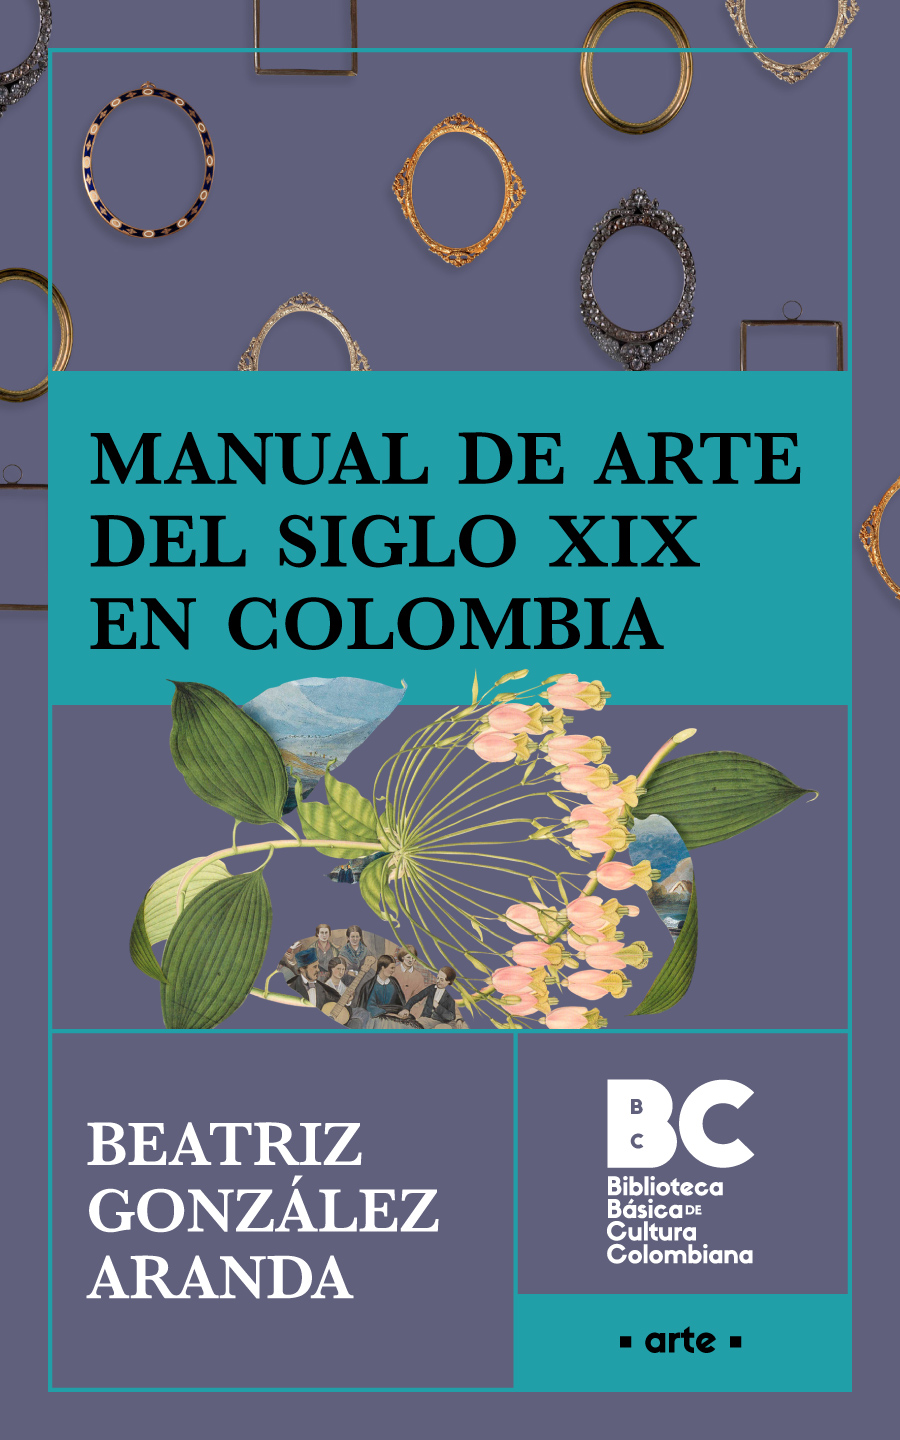 Catalogación en la publicación Biblioteca Nacional de Colombia González - photo 1